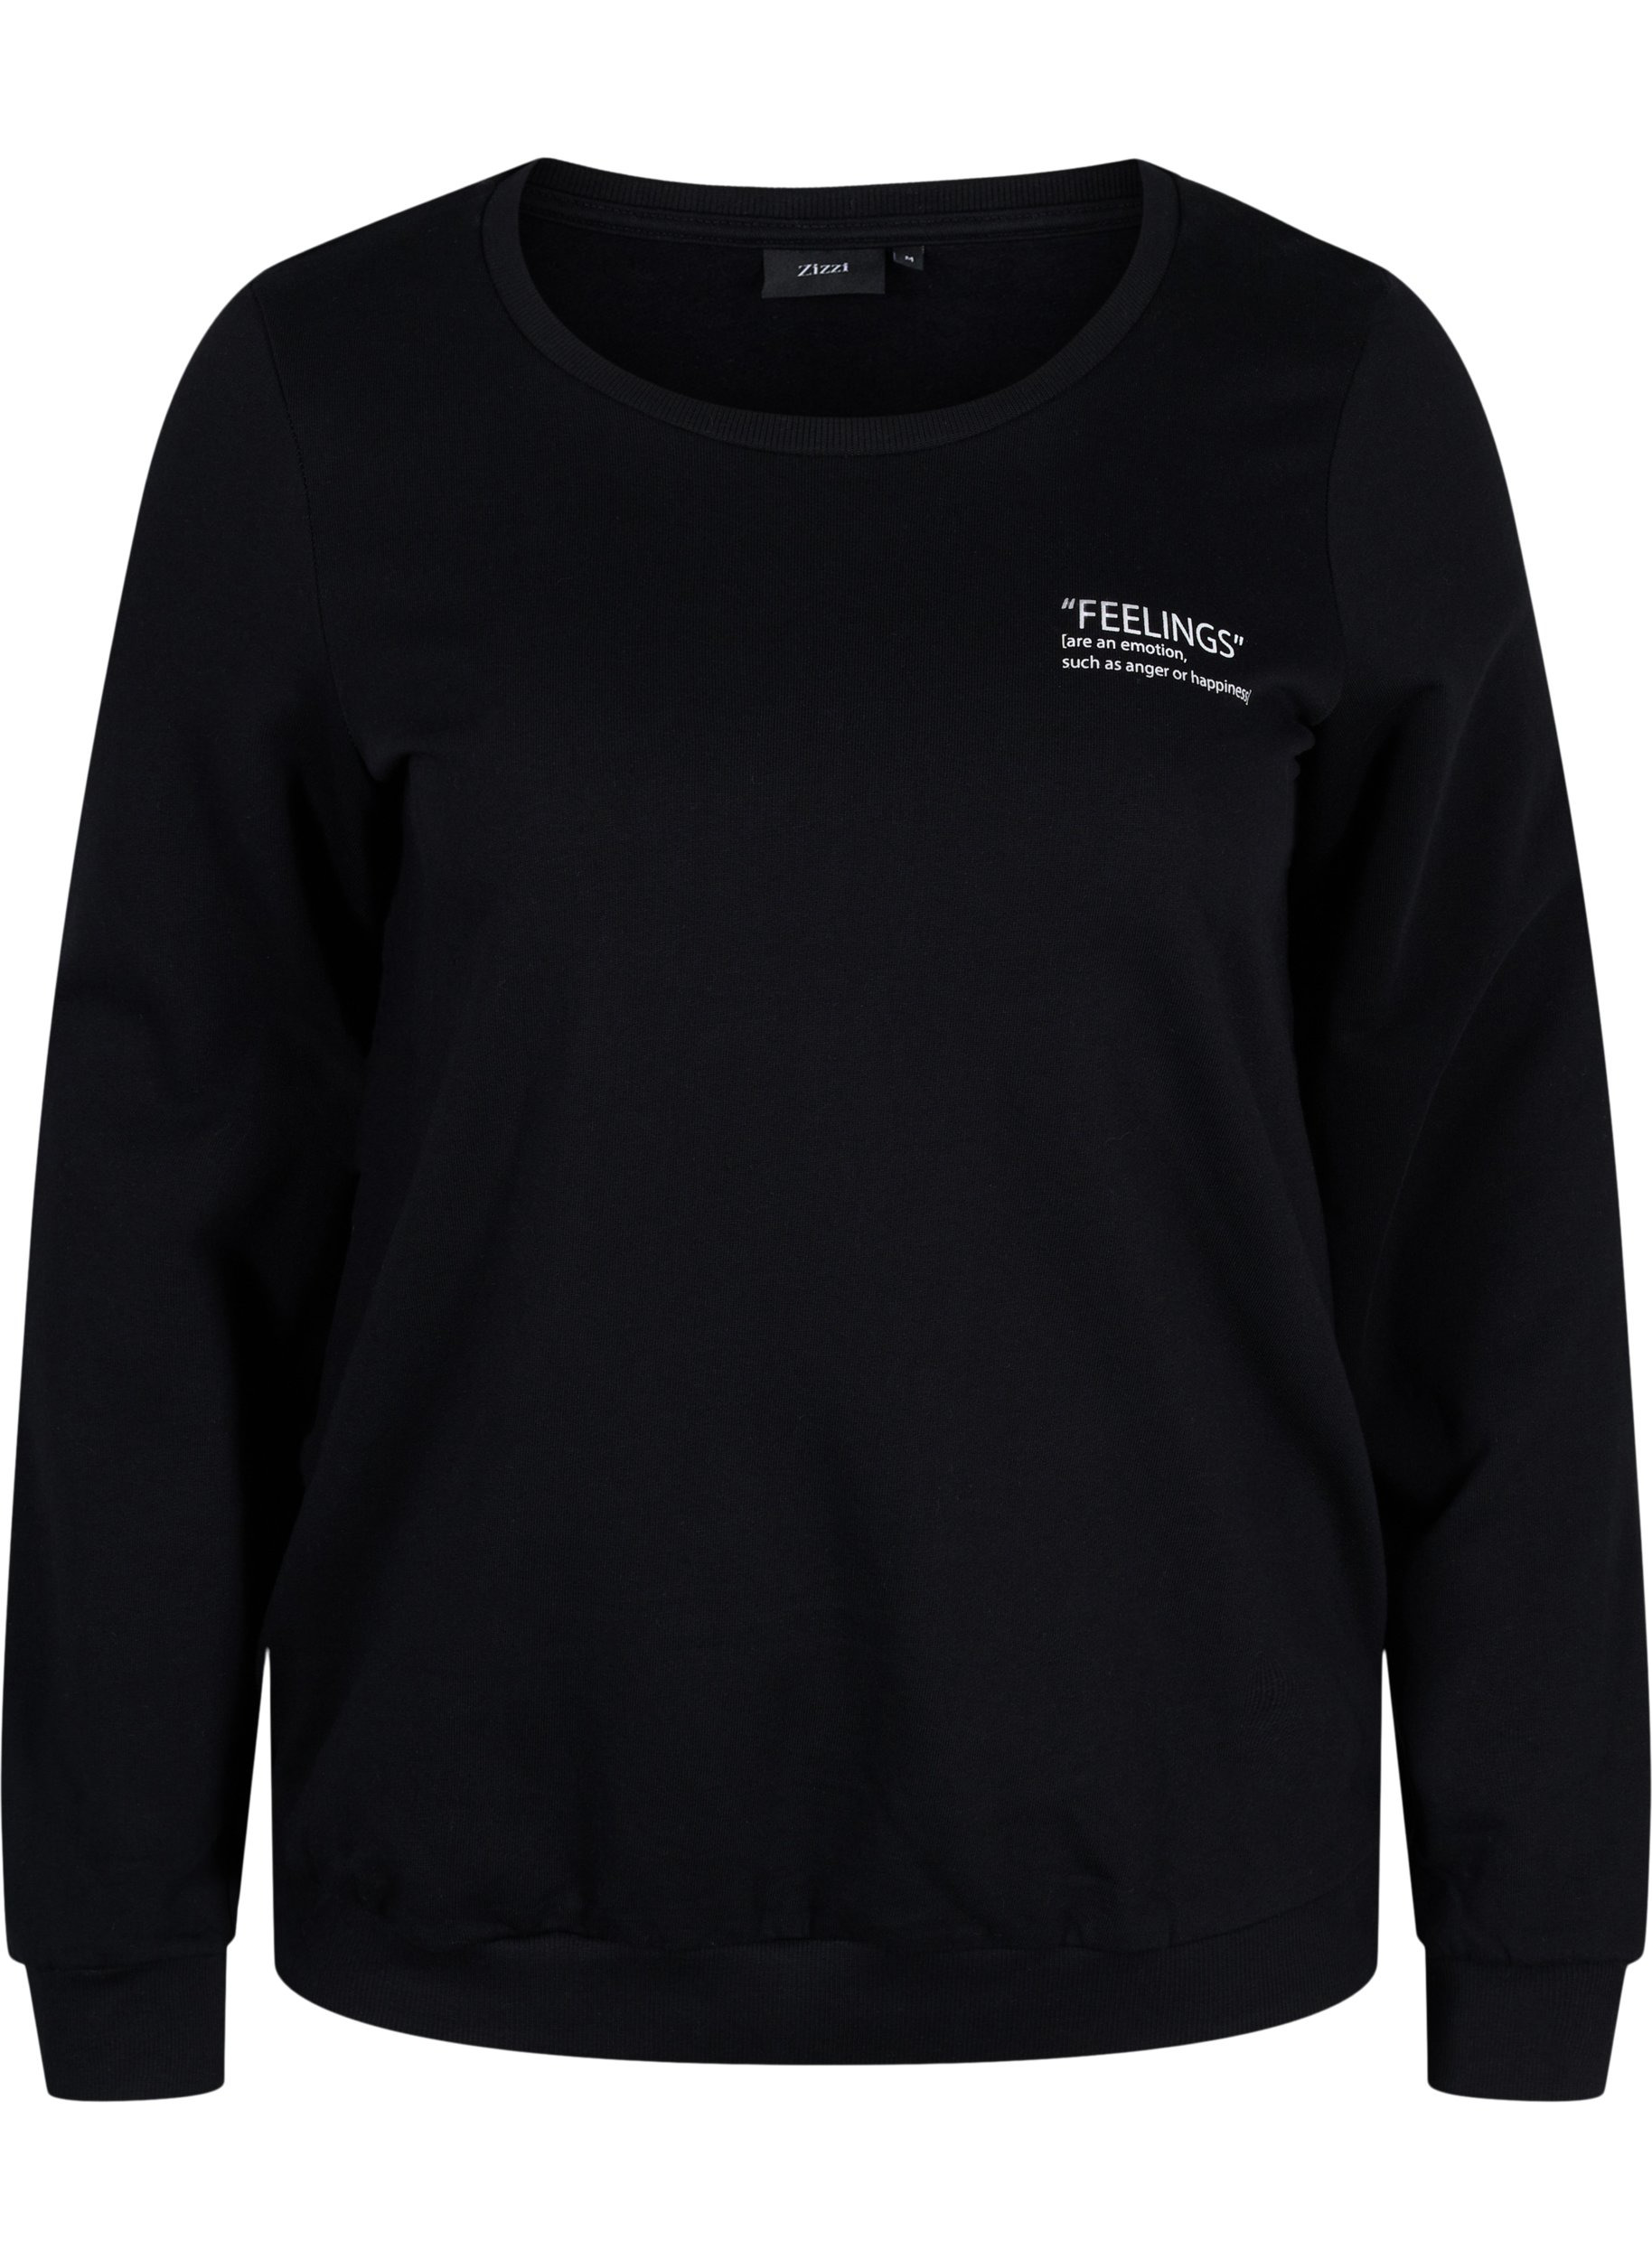 Baumwollsweatshirt mit Textaufdruck, Black